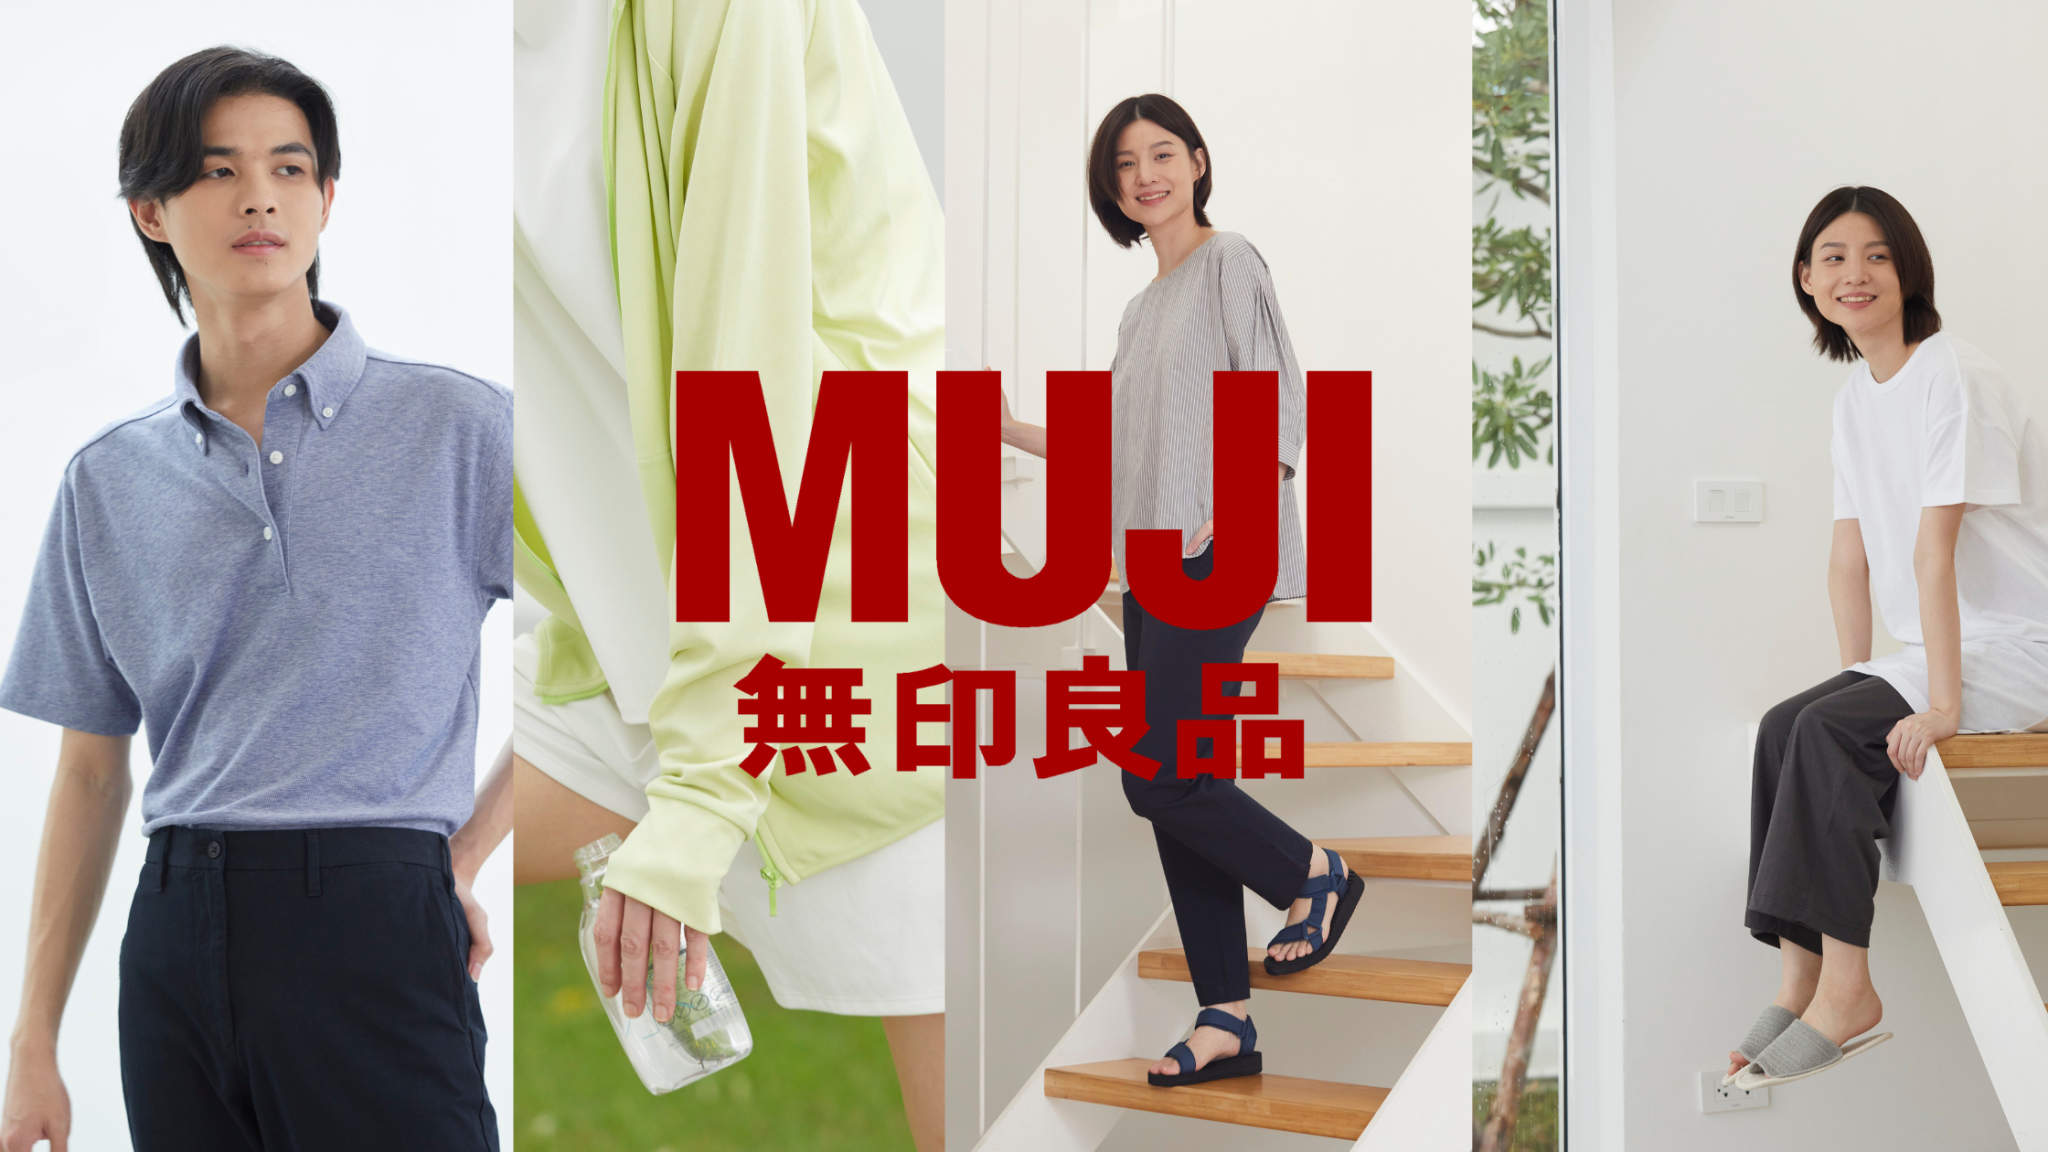 MUJI เปิดตัวเสื้อผ้าคอลเลคชันใหม่ งานดีไซน์และเนื้อผ้าตามภูมิอากาศ ราคาสบายกระเป๋า แต่คงคุณภาพมาตรฐานญี่ปุ่น…